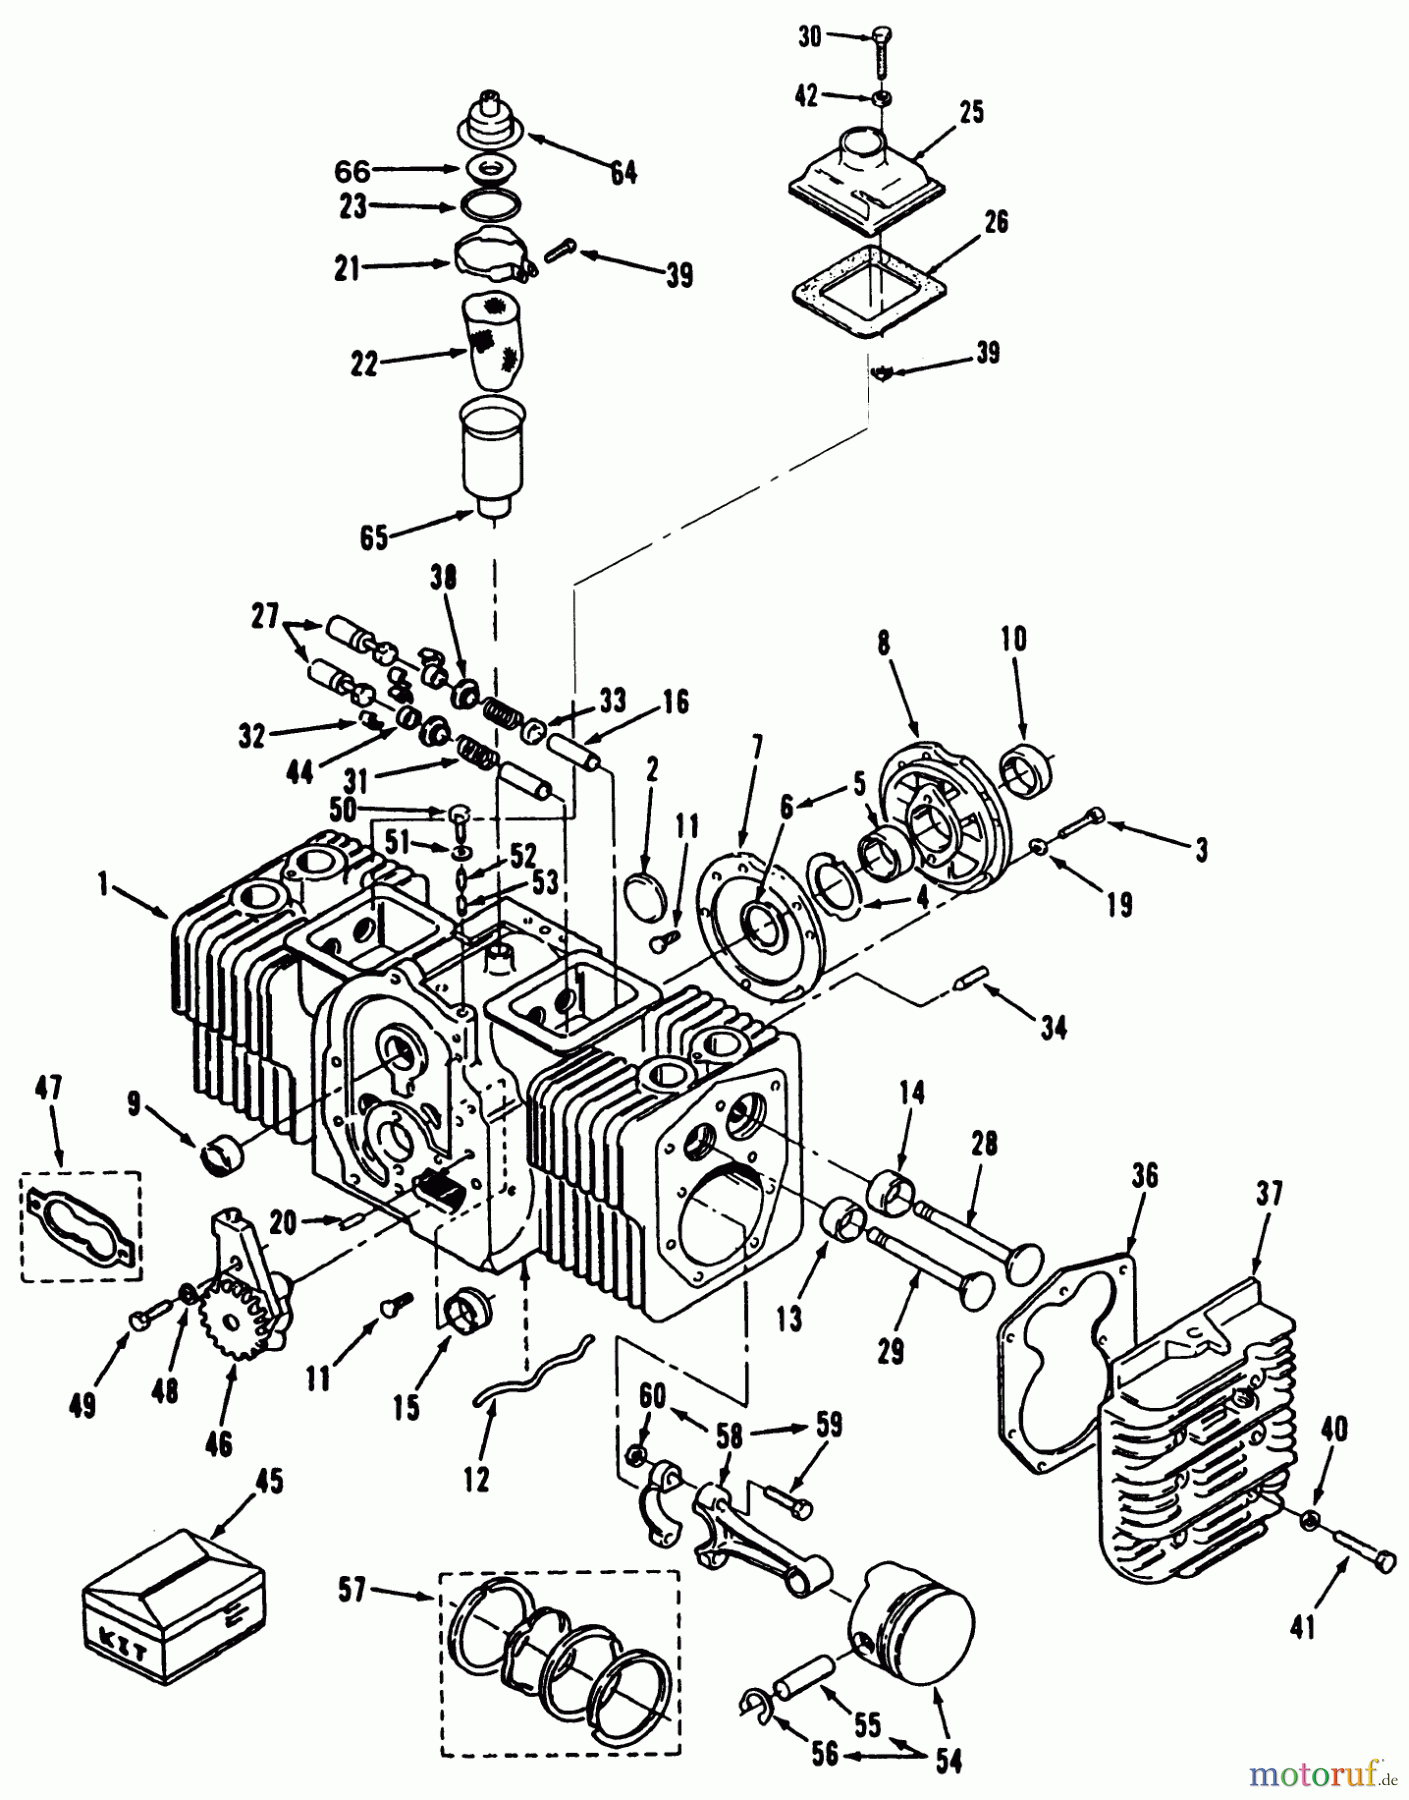  Toro Neu Mowers, Lawn & Garden Tractor Seite 1 51-12KE02 (312-H) - Toro 312-H Garden Tractor, 1992 (2000001-2999999) ENGINE POWER PLUS CYLINDER BLOCK